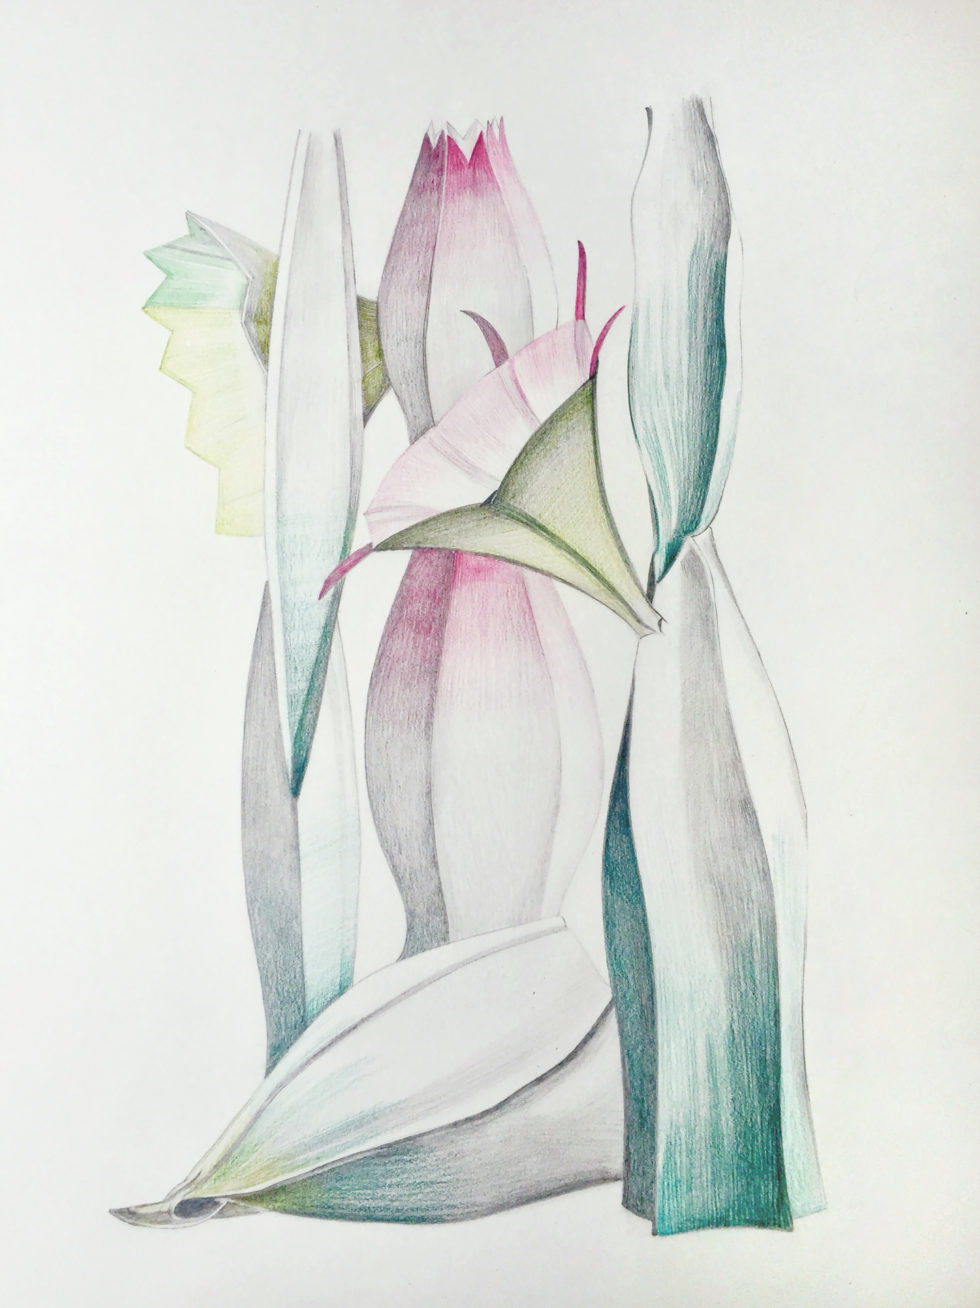 Maria Ibanez Lago, Crayon sur papier grain fin 300g, 40cm x 50cm, 2020 ©